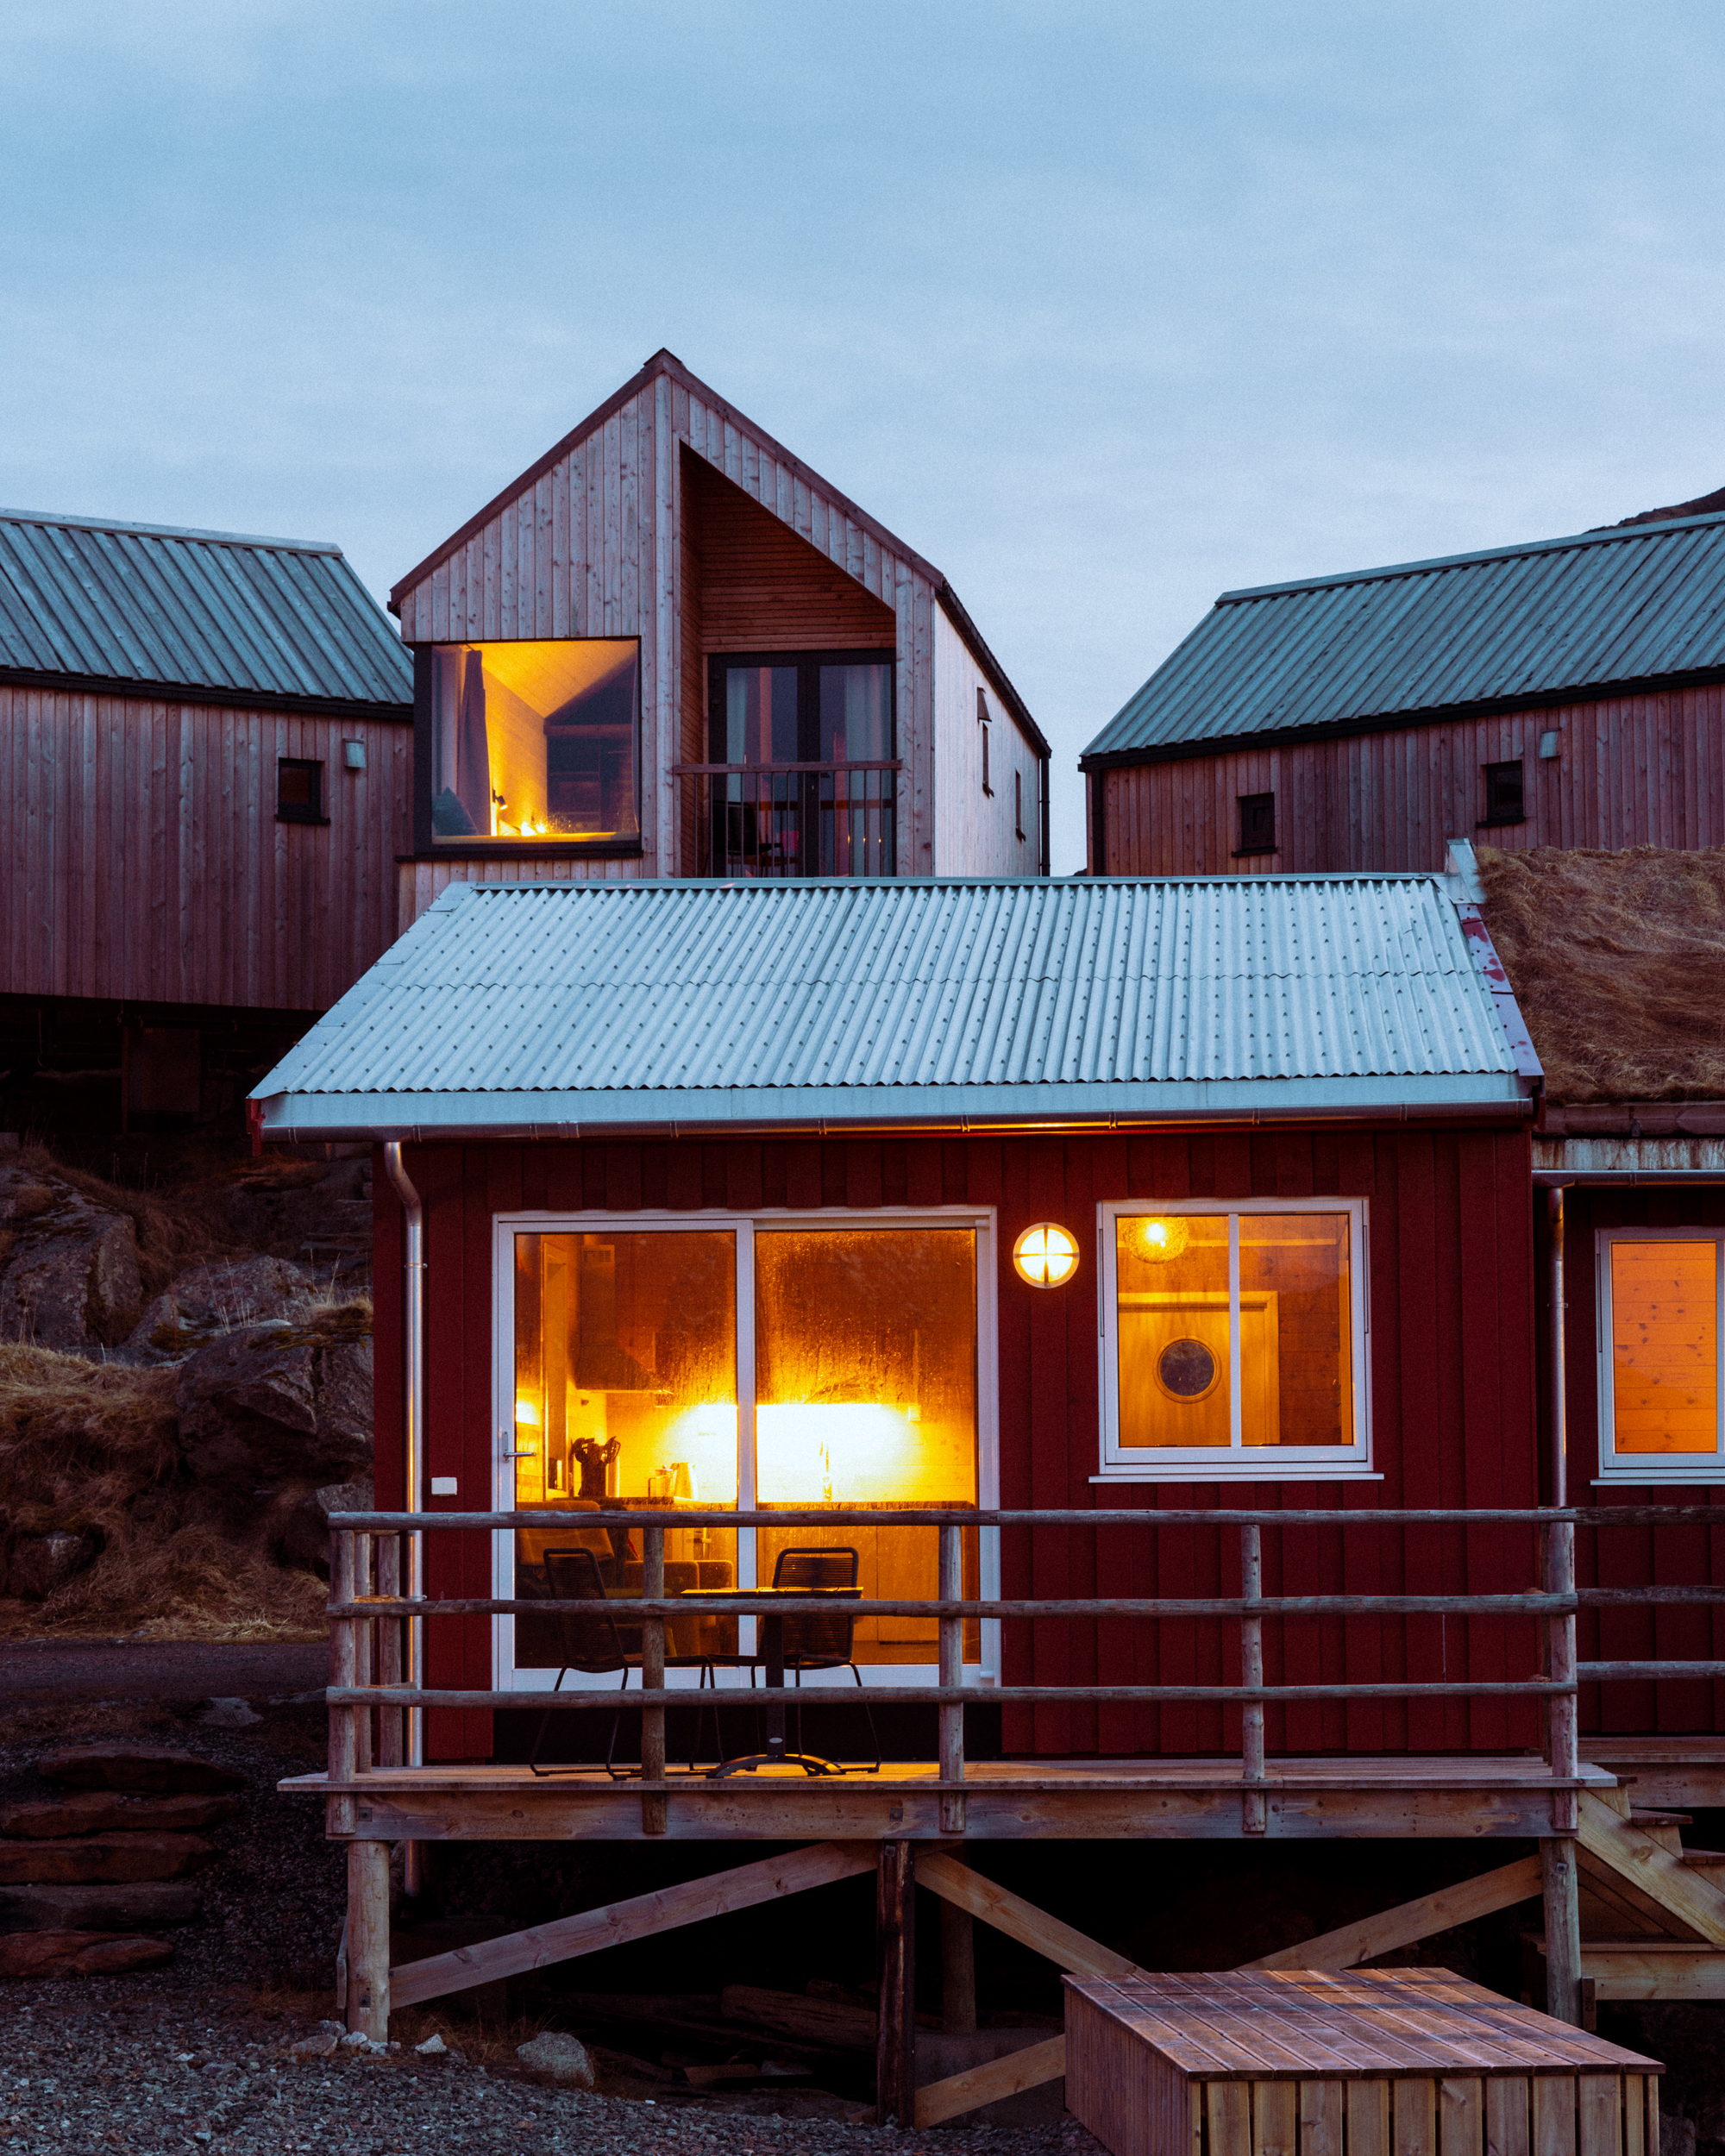 Rachel Off Duty: Hattvika Lodge in Lofoten Islands, Norway